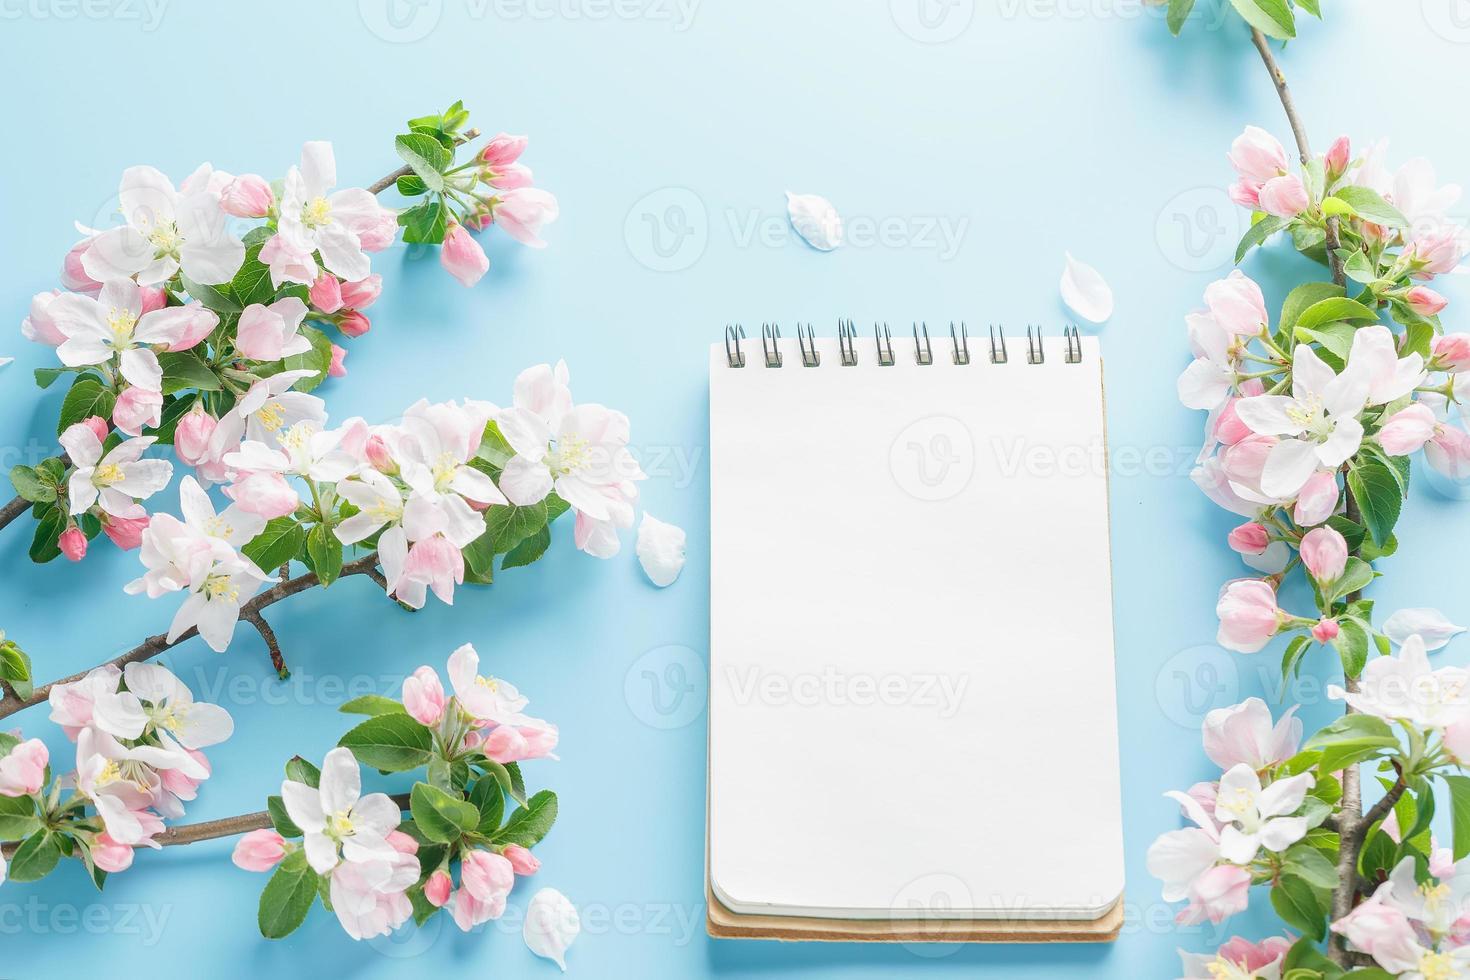 sakura de primavera florescendo em um fundo azul com espaço de bloco de notas para uma mensagem de saudação. o conceito de primavera e dia das mães. lindas flores delicadas de cerejeira rosa na primavera foto